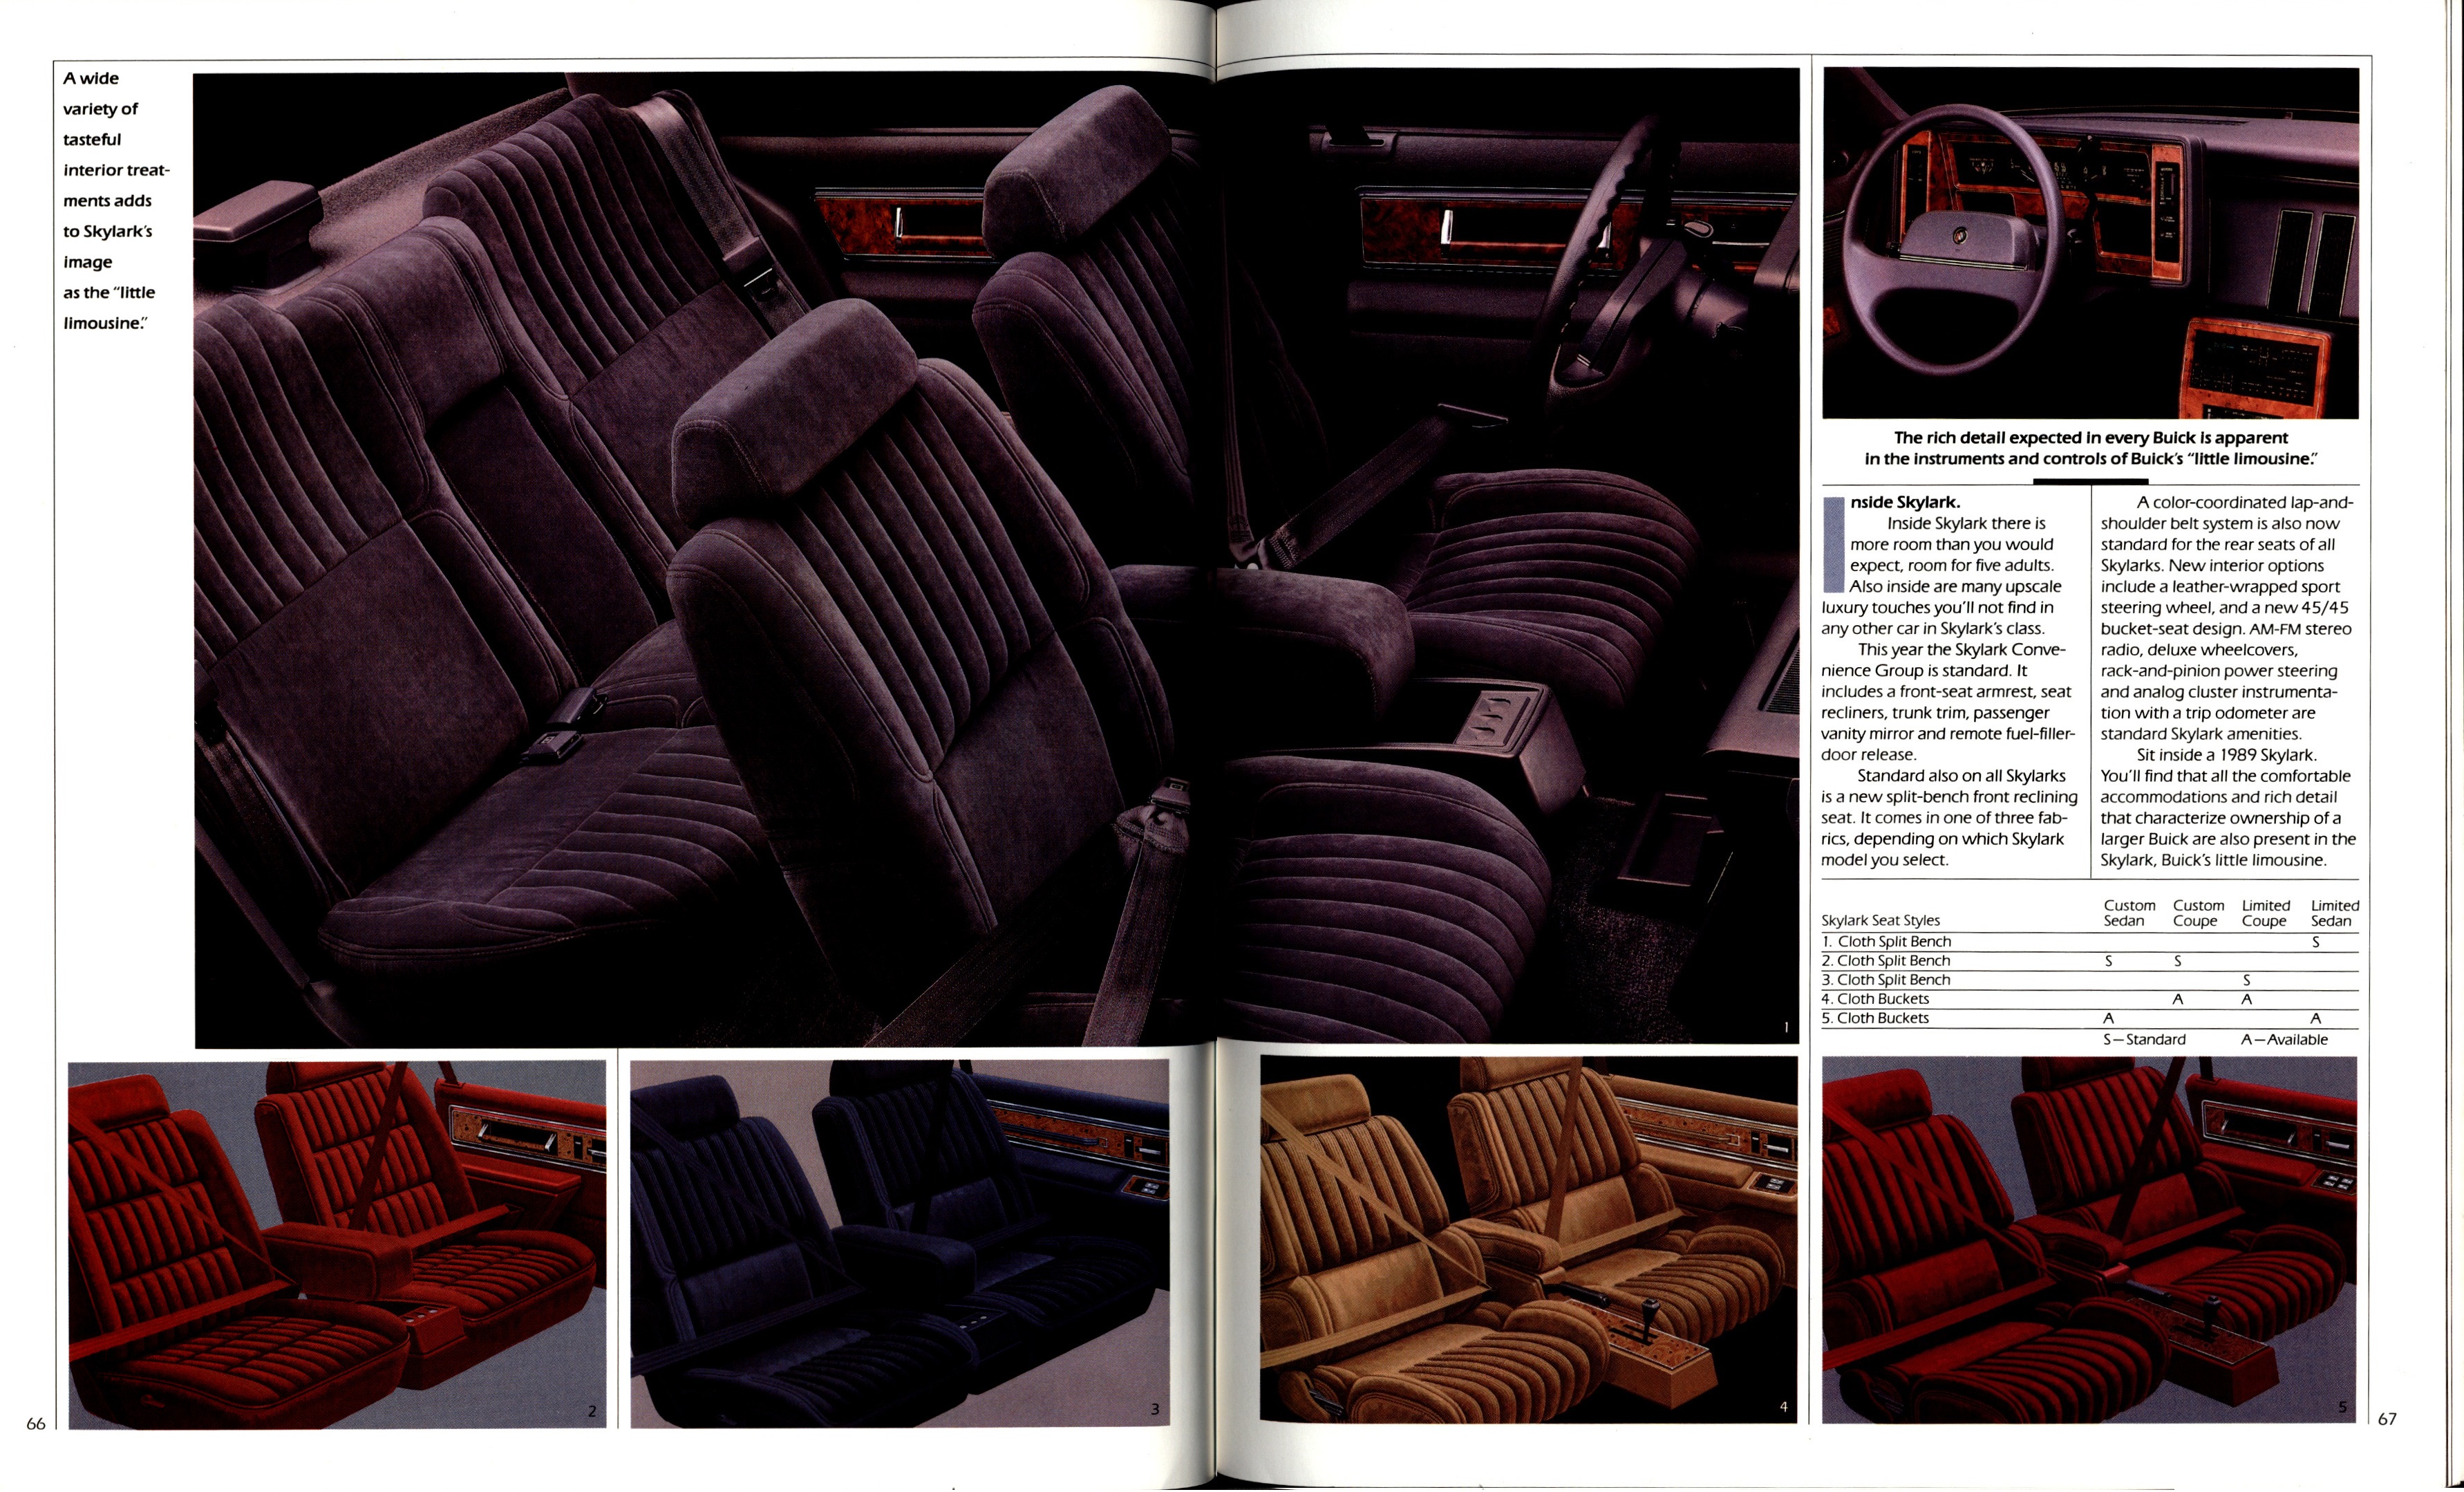 1989 Buick Full Line Prestige-66-67